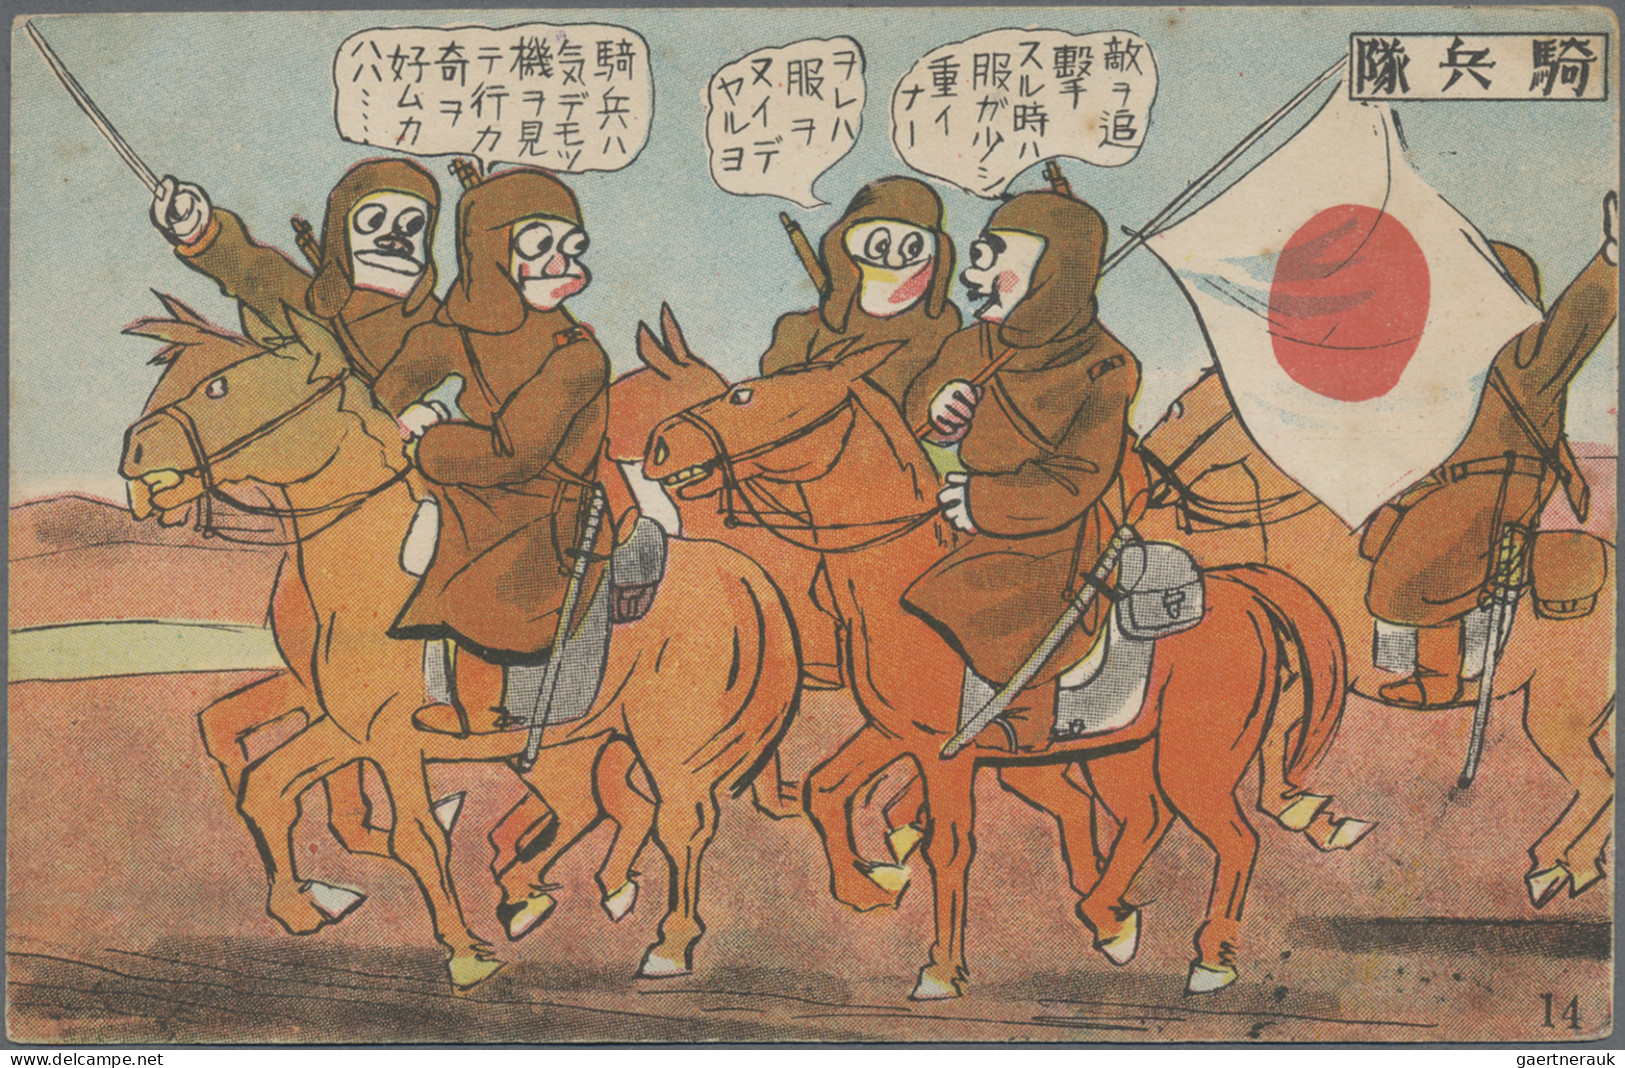 Japan: 1928/1942 (ca.), army, japanese cartoon (manga) series ppc: dispatch to M